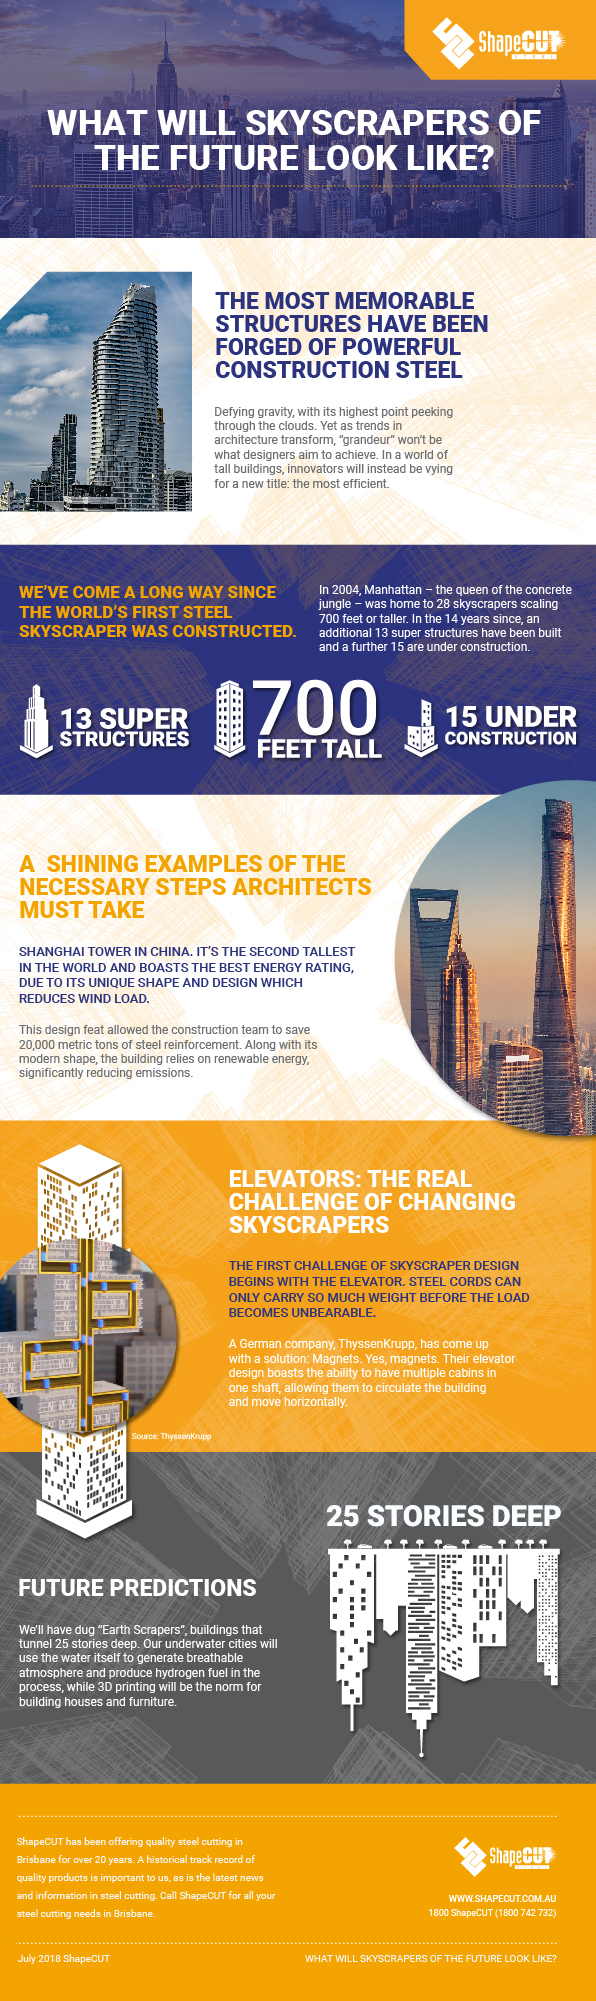 Skyscraper infographic